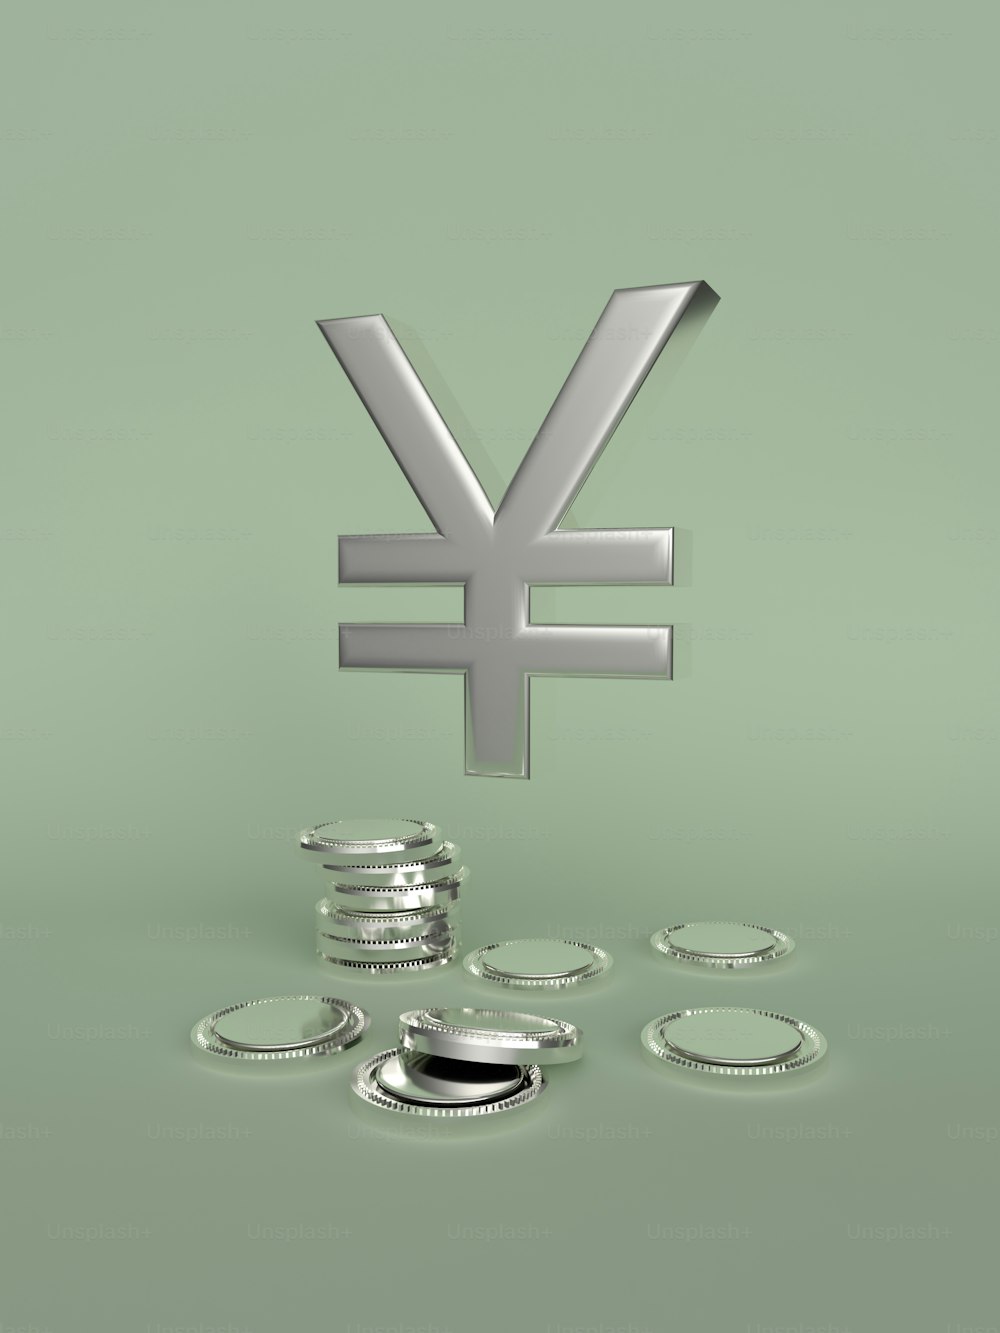 un simbolo di valuta d'argento seduto in cima a una pila di monete